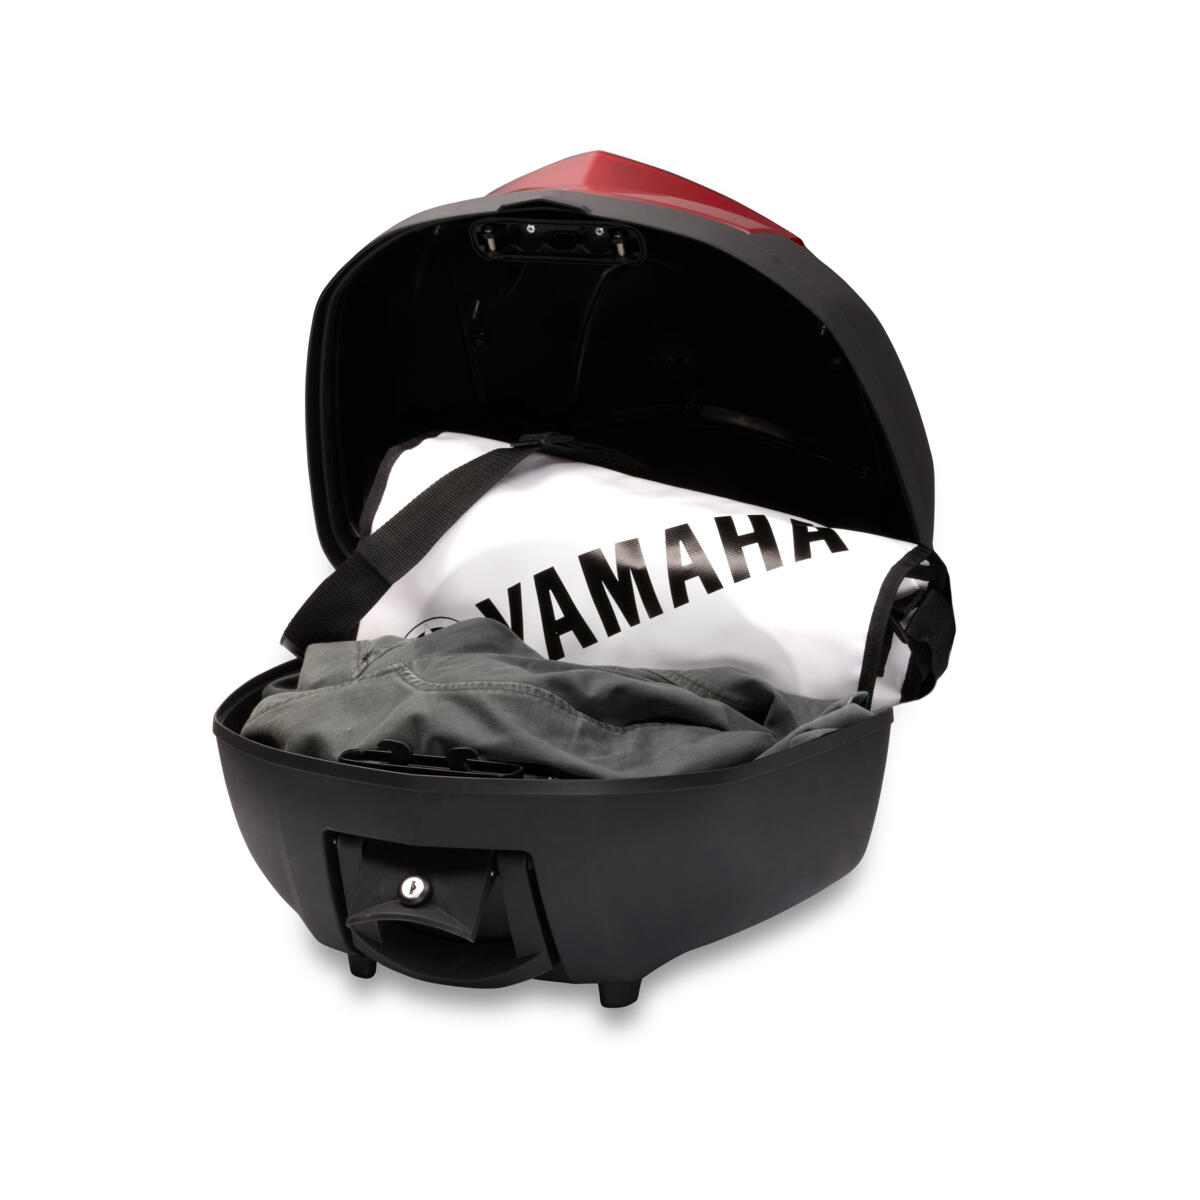 Wysokiej jakości górny kufer oferujący dodatkowe miejsce na bagaż lub inne przedmioty w Twoim motocyklu Yamaha.